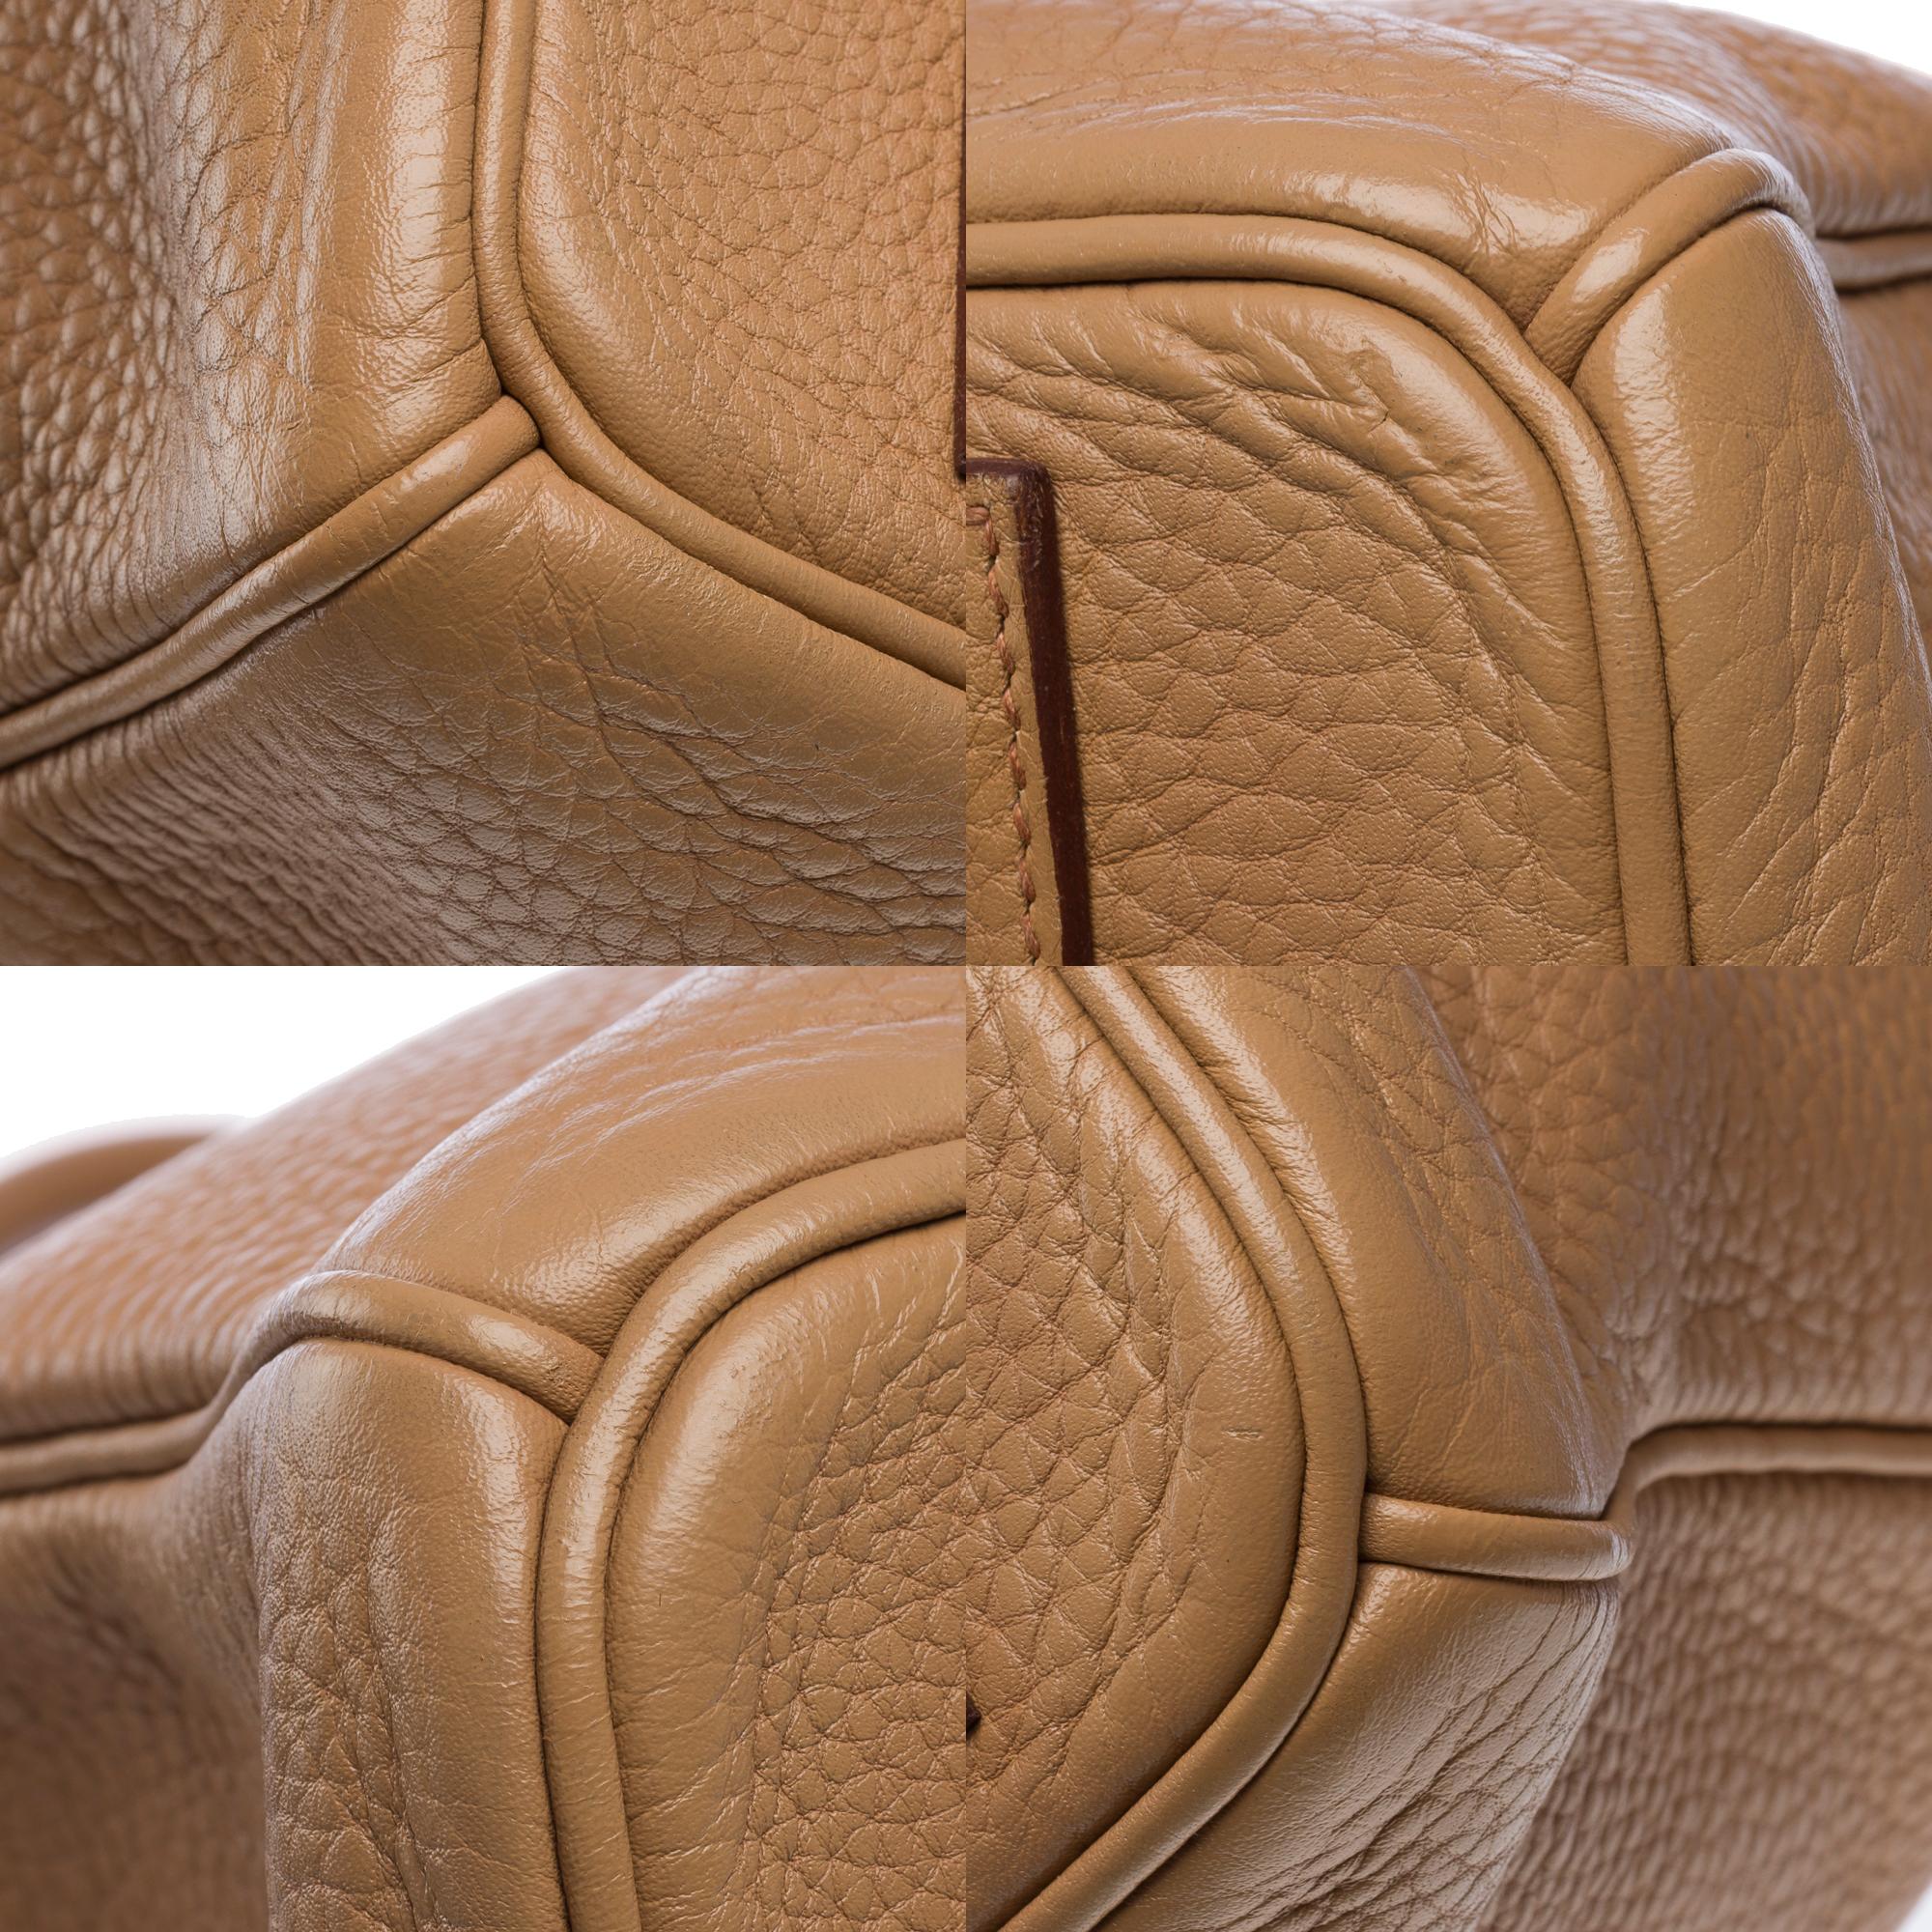 Hermes Birkin 40 handbag in Tabac Togo leather, SHW For Sale 8